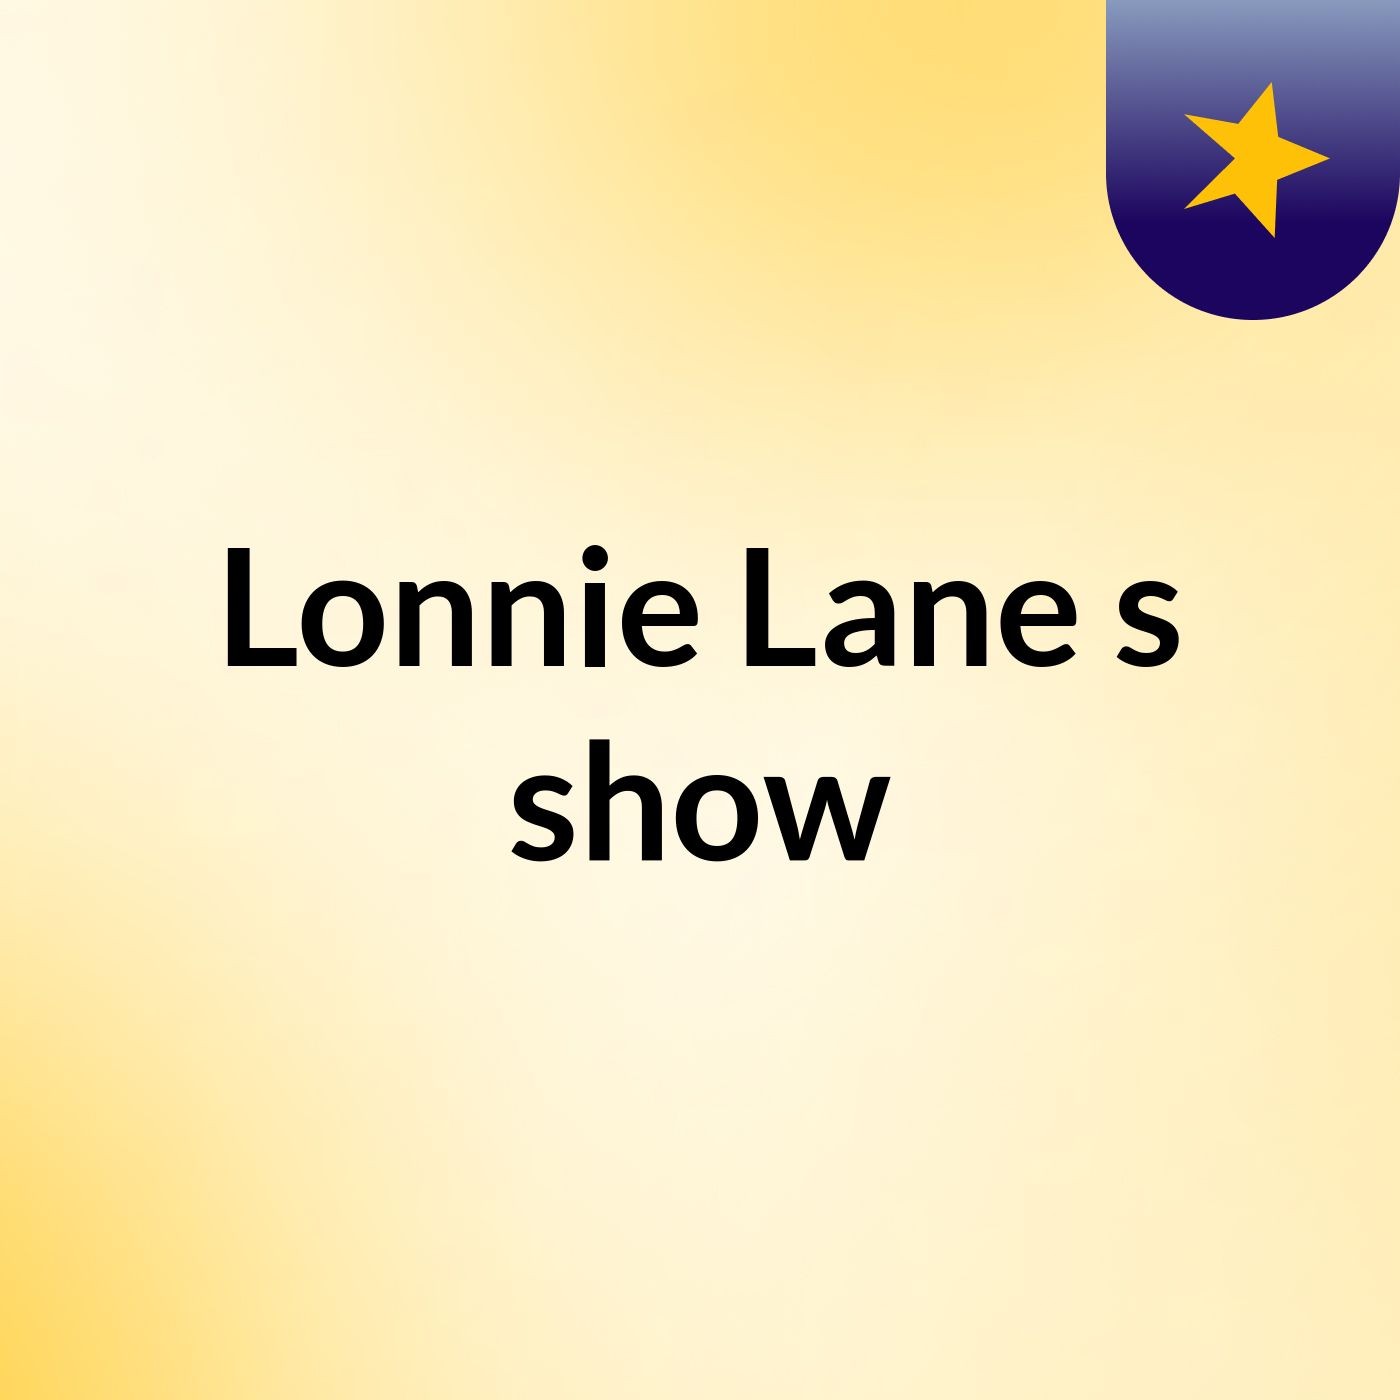 Lonnie Lane's show